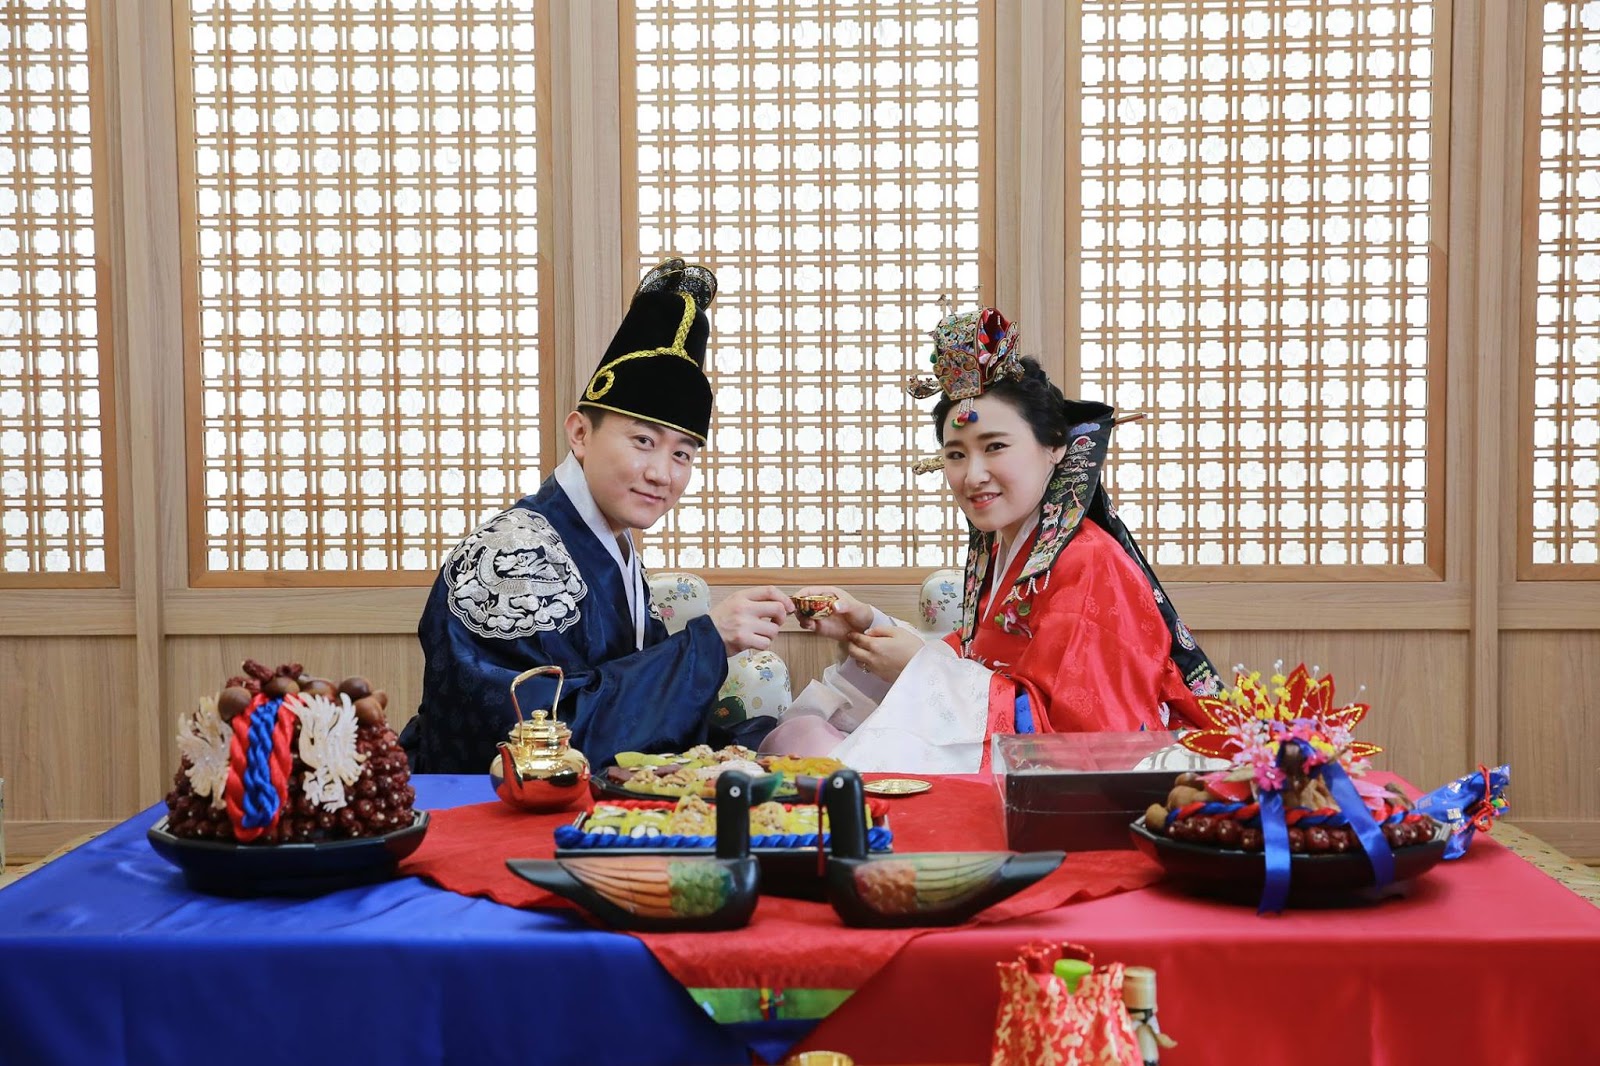 đám cưới Hàn Quốc có truyền thống là lễ falaka